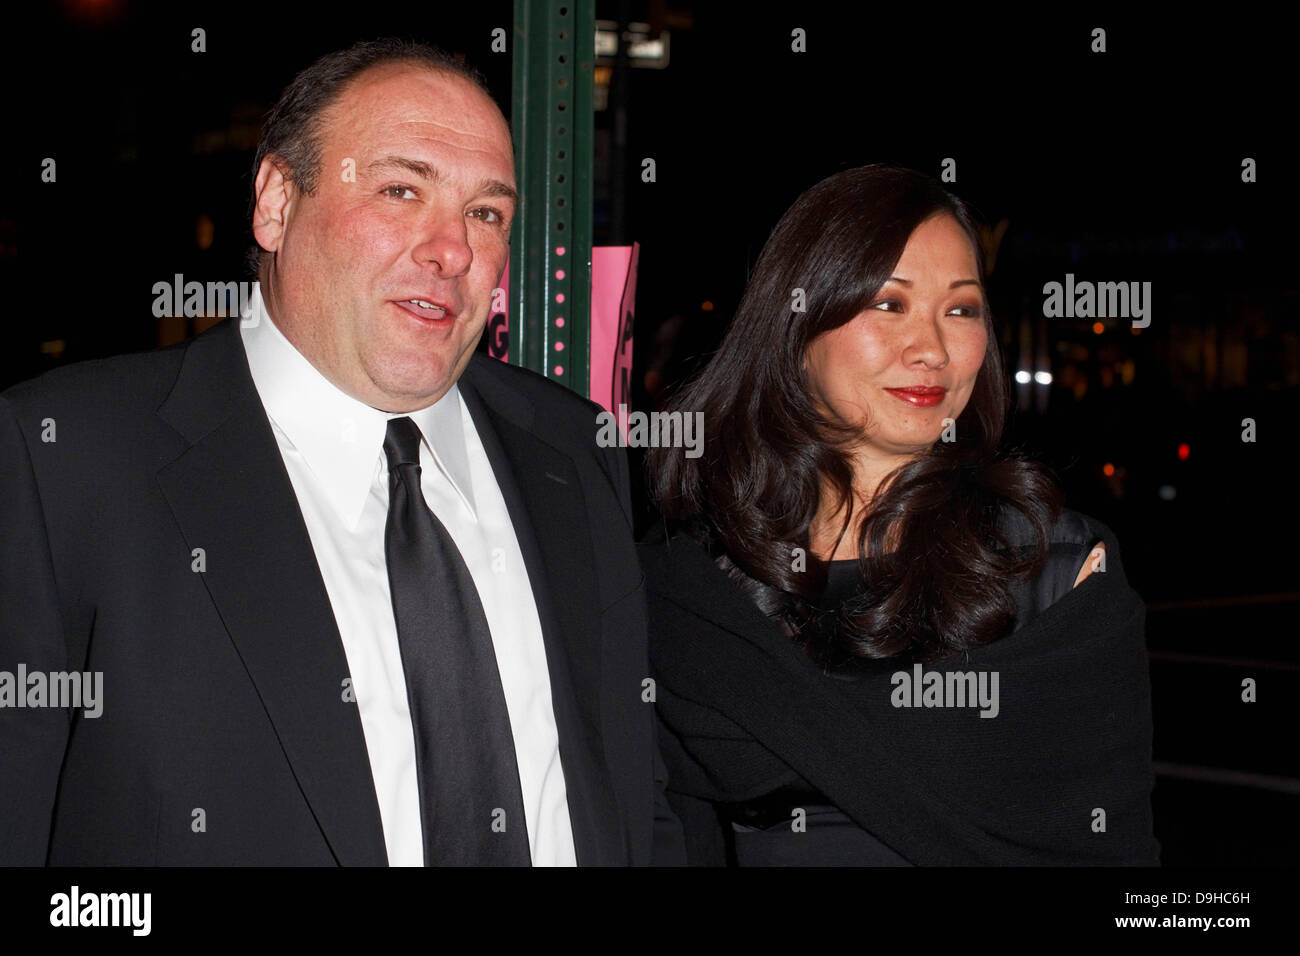 NEW YORK - File foto- Jan 11, 2010- James Gandolfini e sua moglie Deborah Lin arrivare per la New York Film Critics Circle Awards di New York City. Gandolfini muore in Italia il 19 giugno 2013. Foto Stock